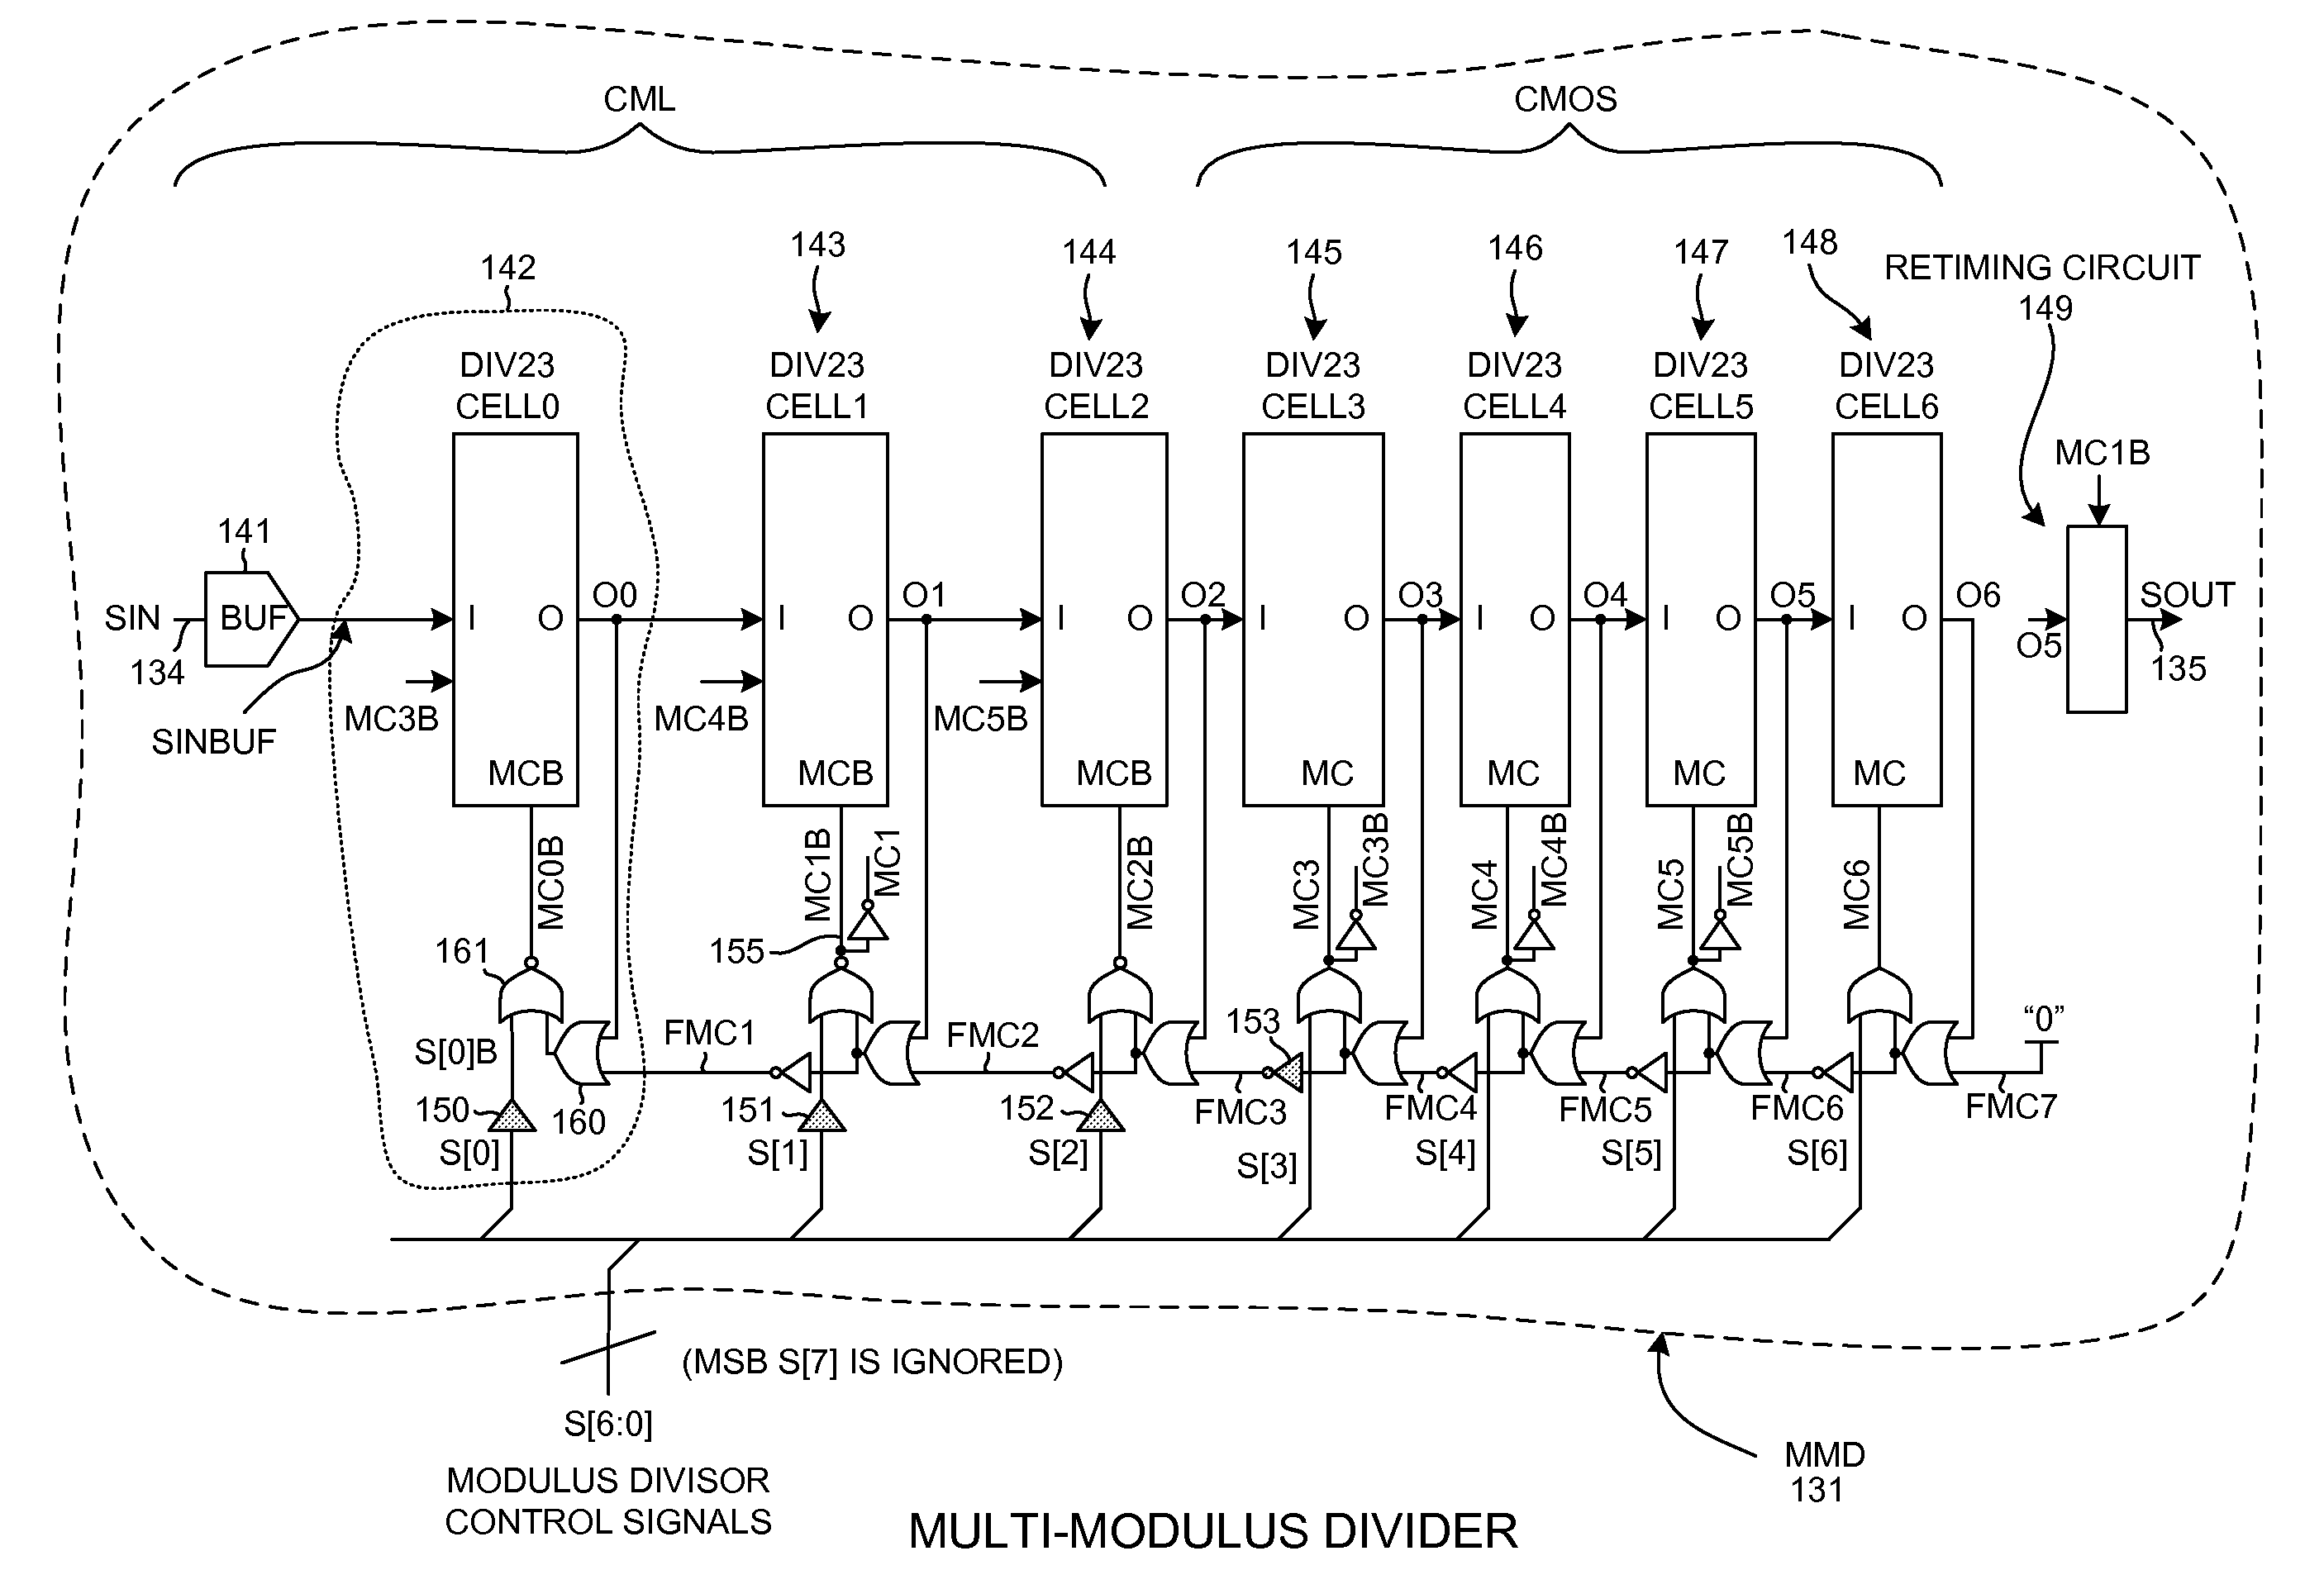 Multi-modulus divider retiming circuit